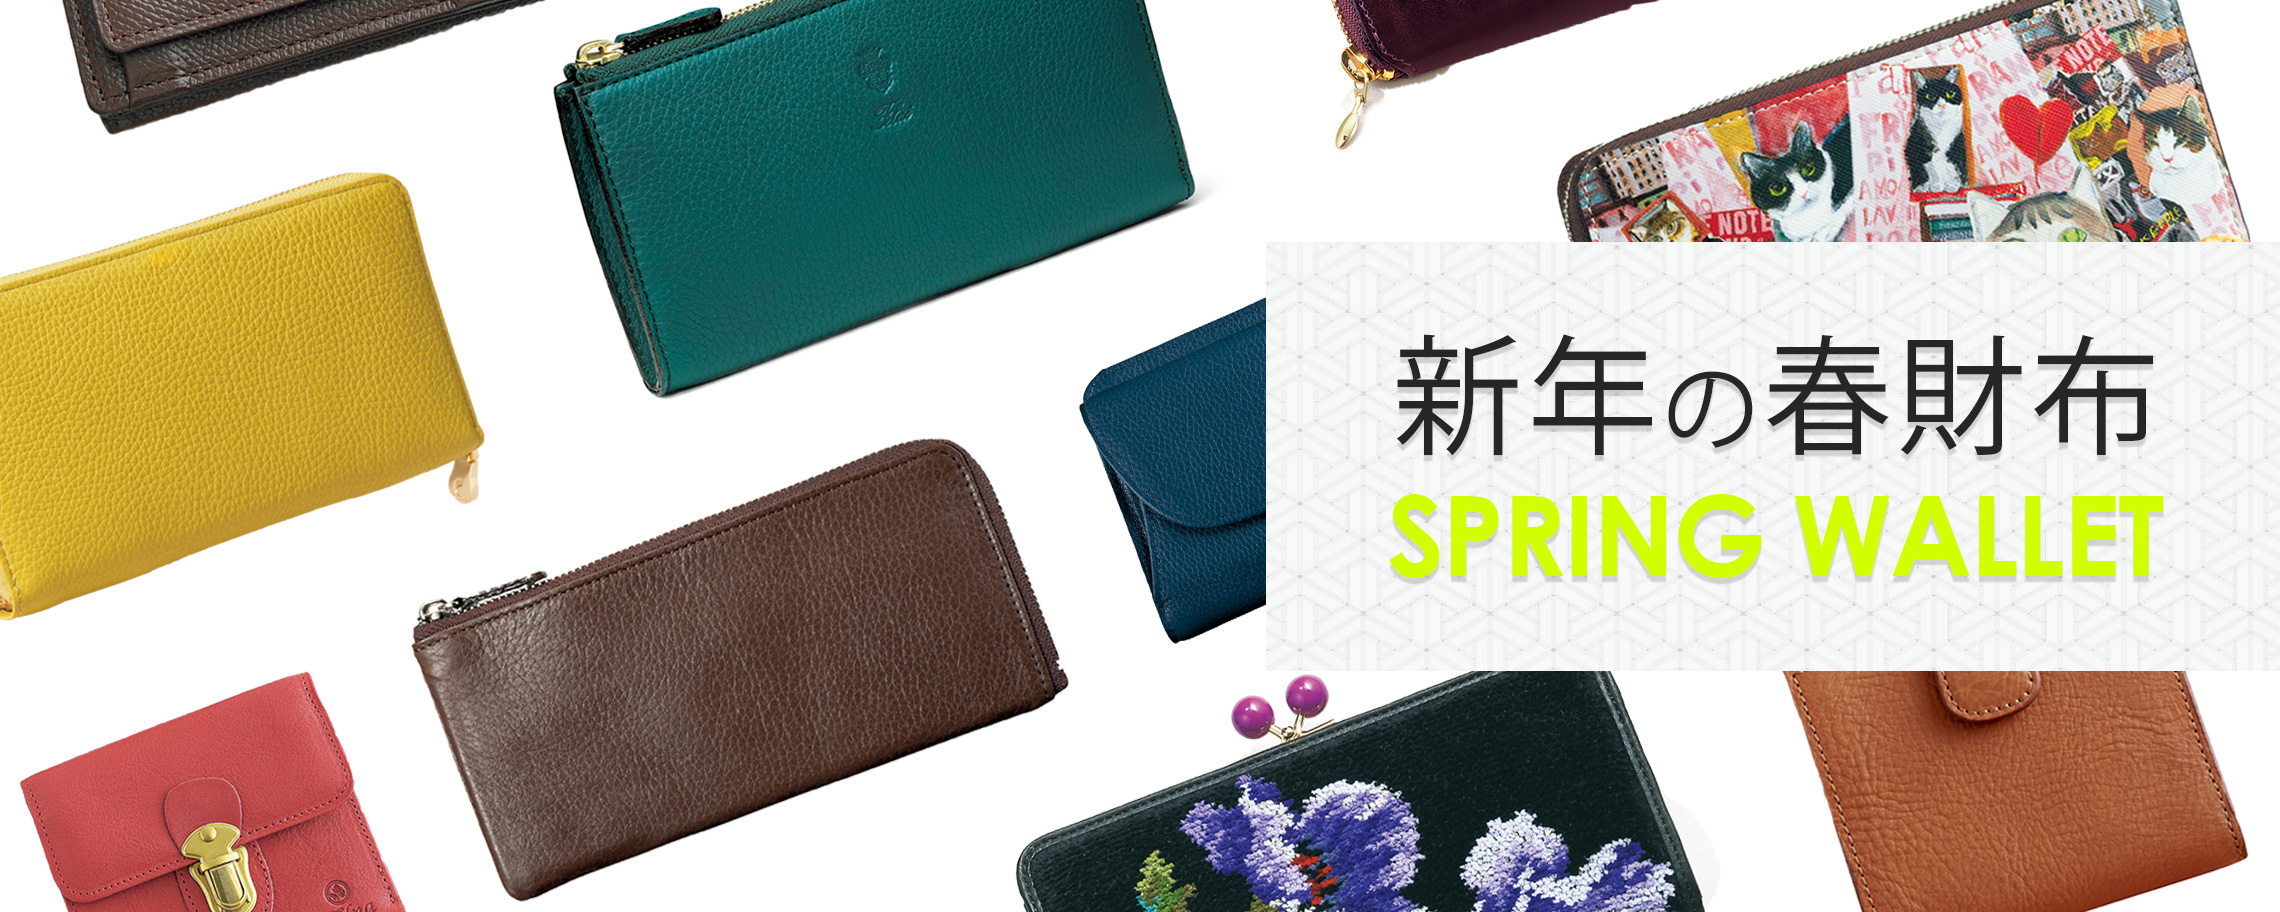 【特集】新年の春財布